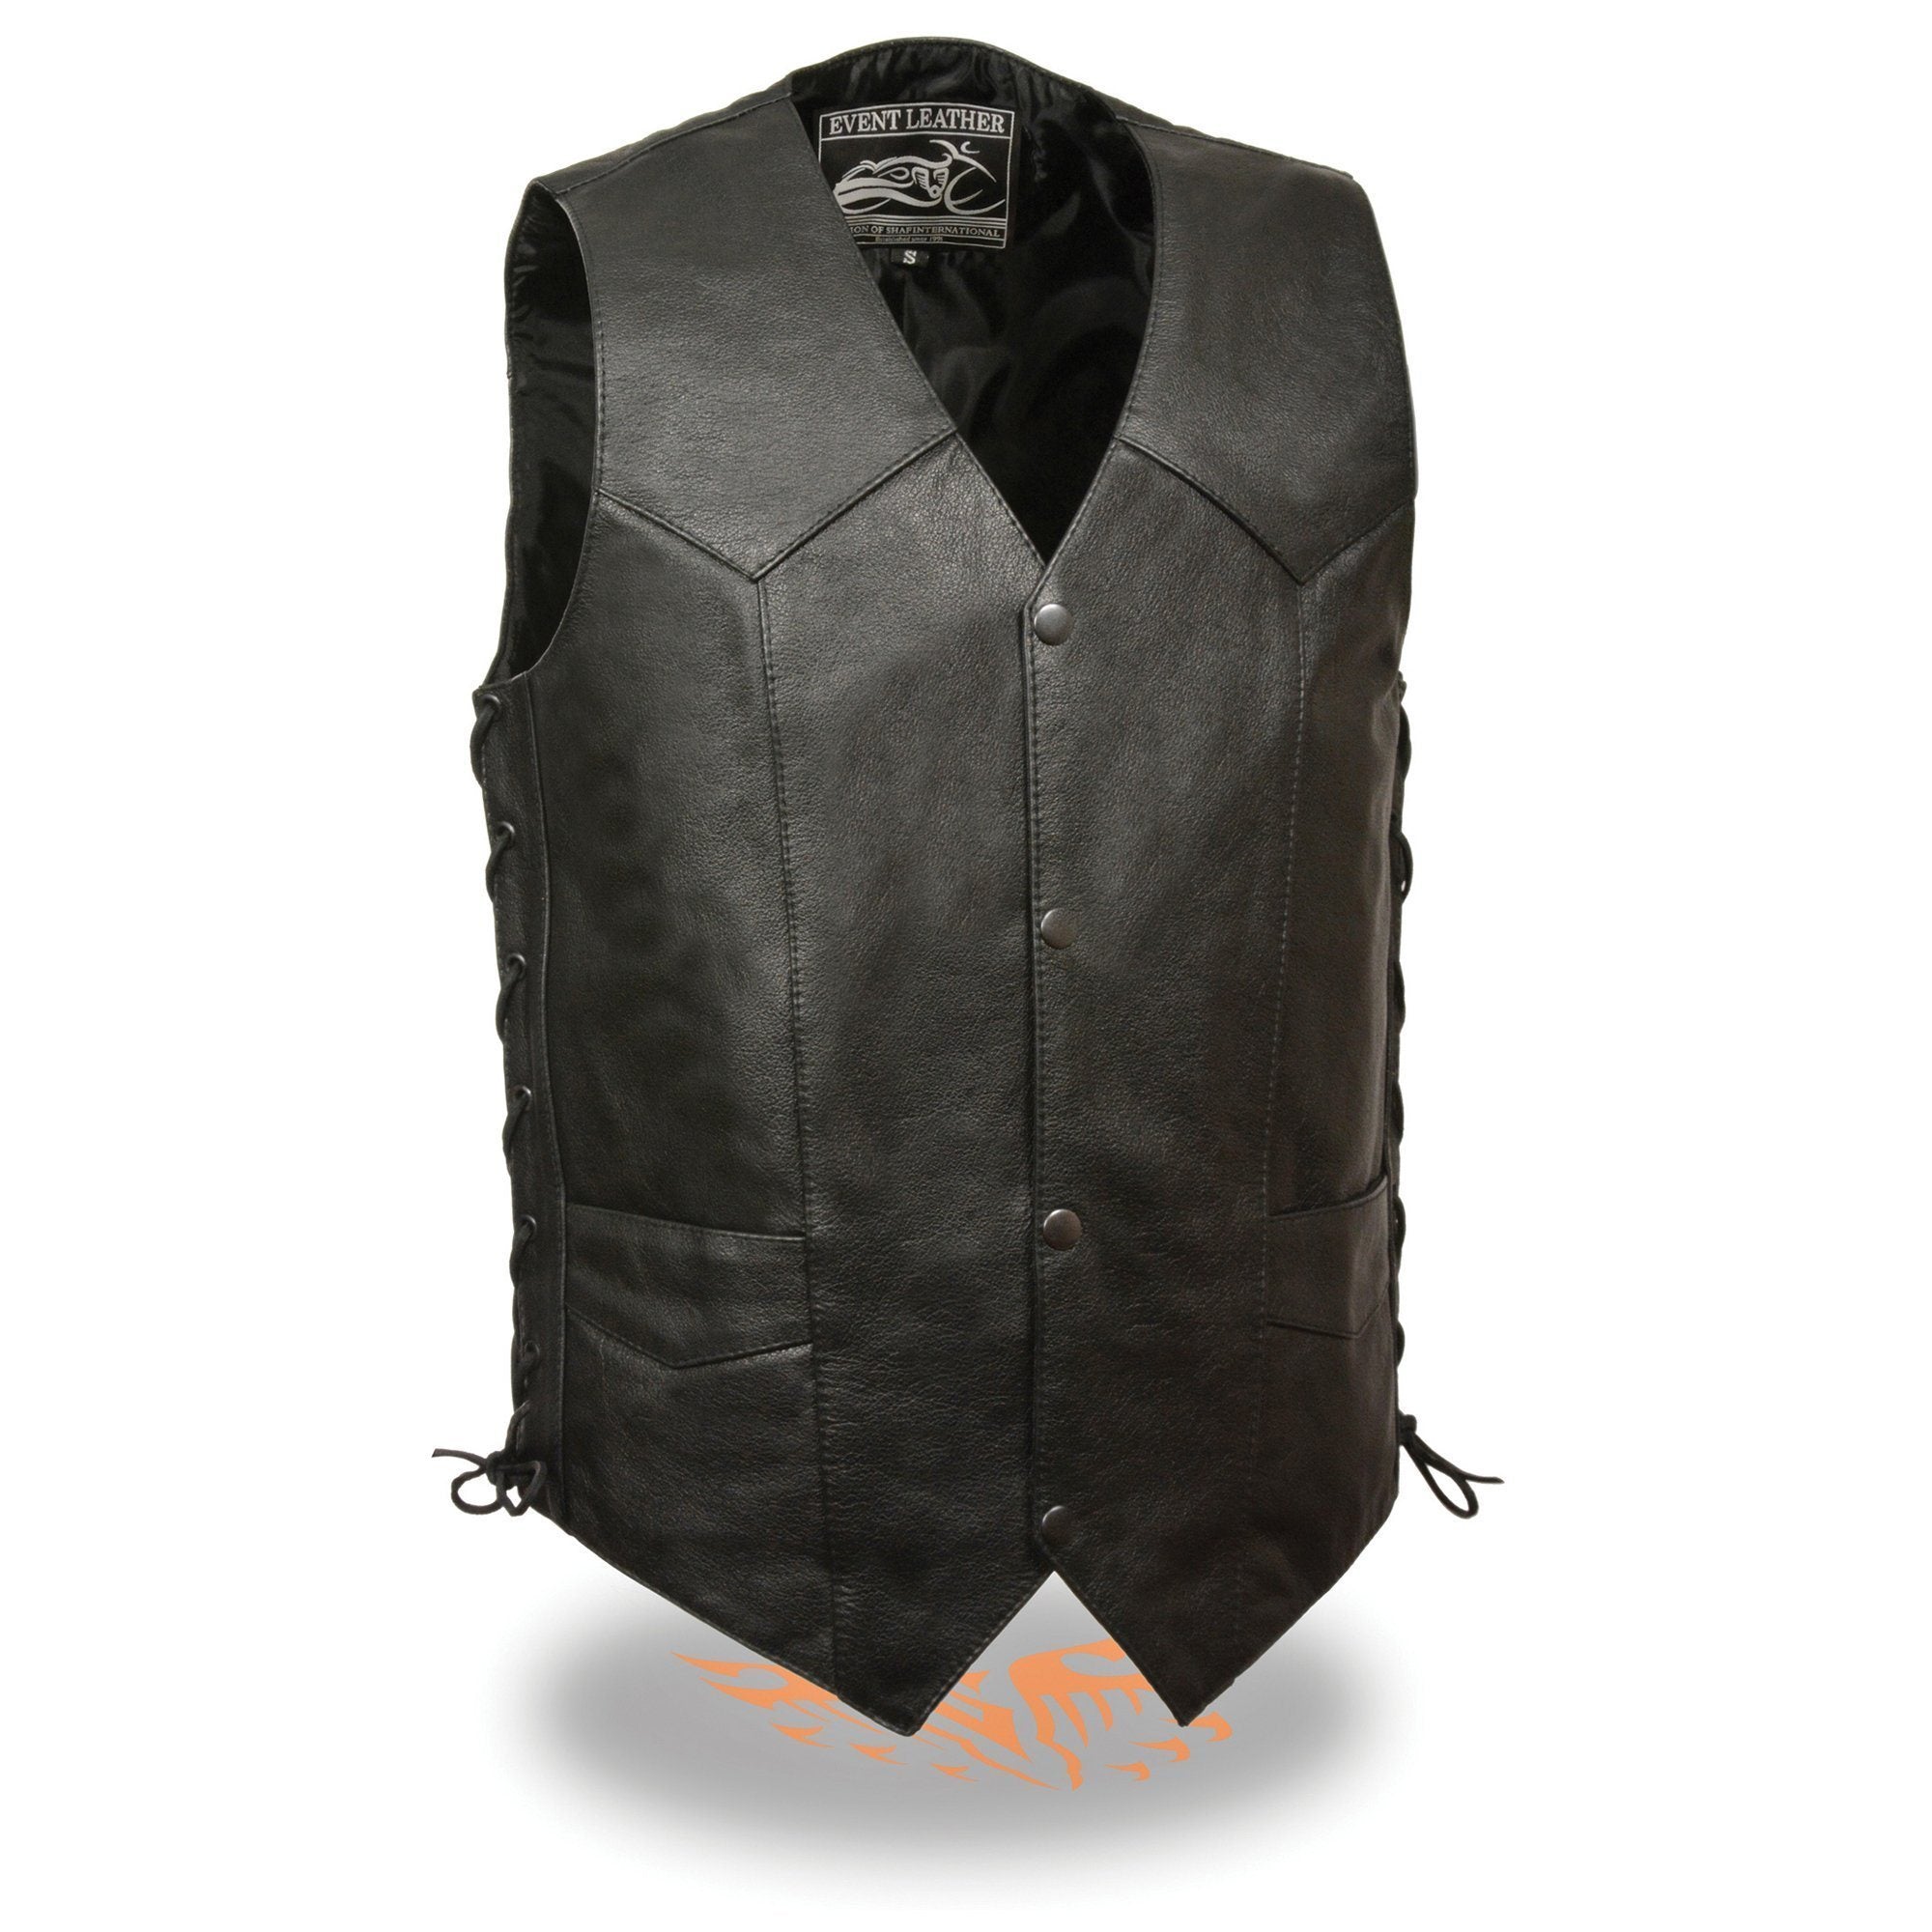 Event Leather EL5397 Men's Black Leather Vest with Gun Pocket and Side